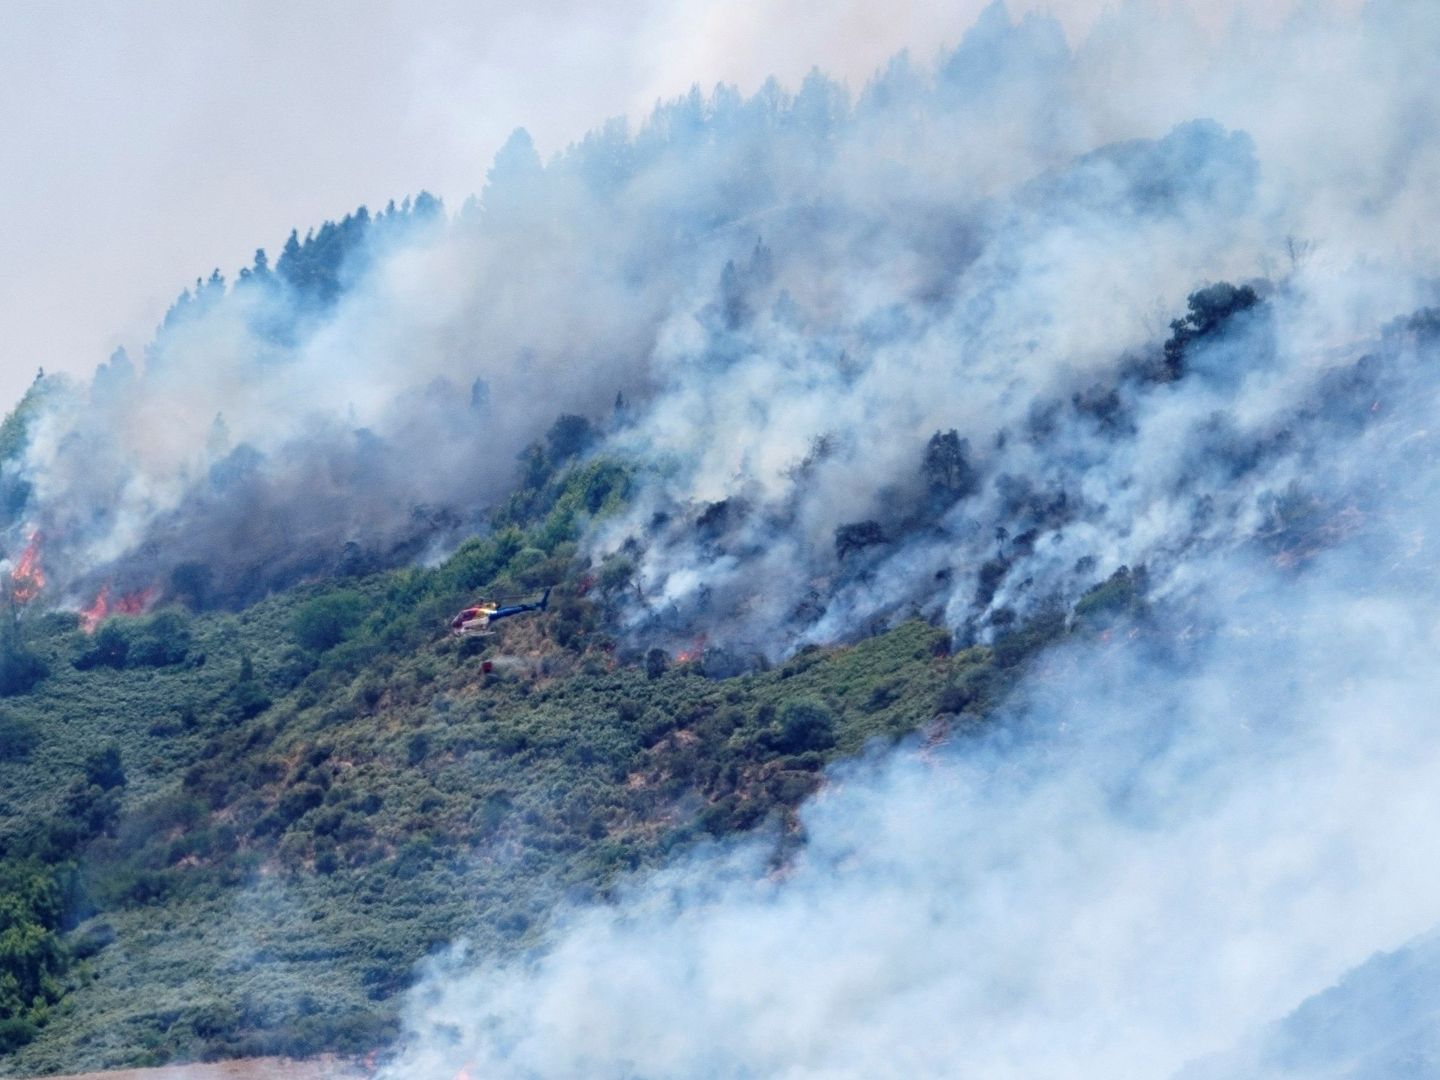 Un helicóptero trabaja en las tareas de extinción del incendio que afecta a varios municipios de la isla de Gran Canaria, como Valleseco. (EFE)